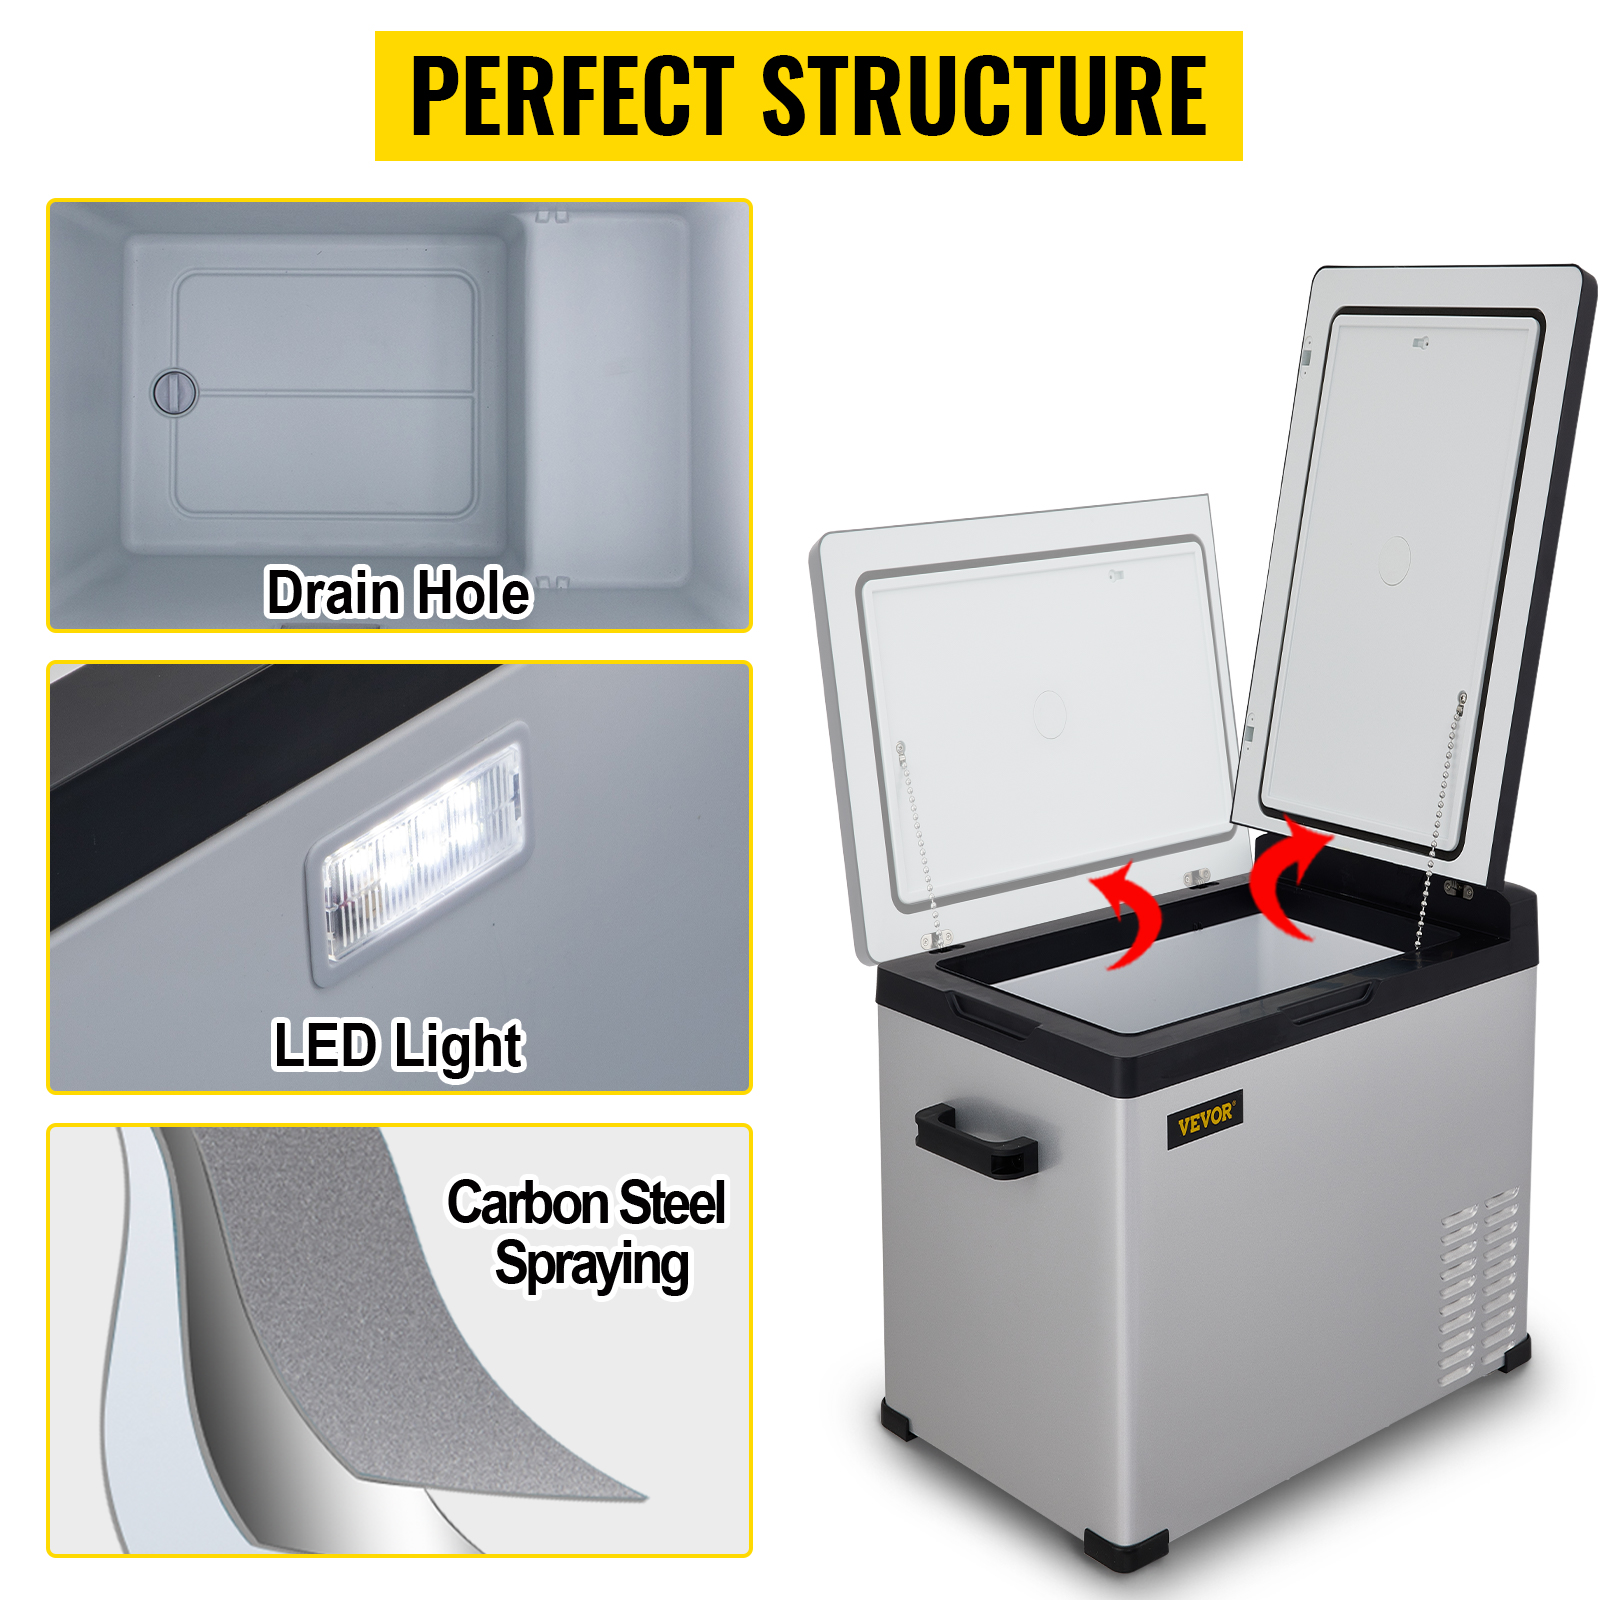 VEVOR 53 Quart Portable Refrigerator, Compressor Refrigeration, 12V/24V DC  and 110-220V AC, With Bluetooth Control, Energy Star